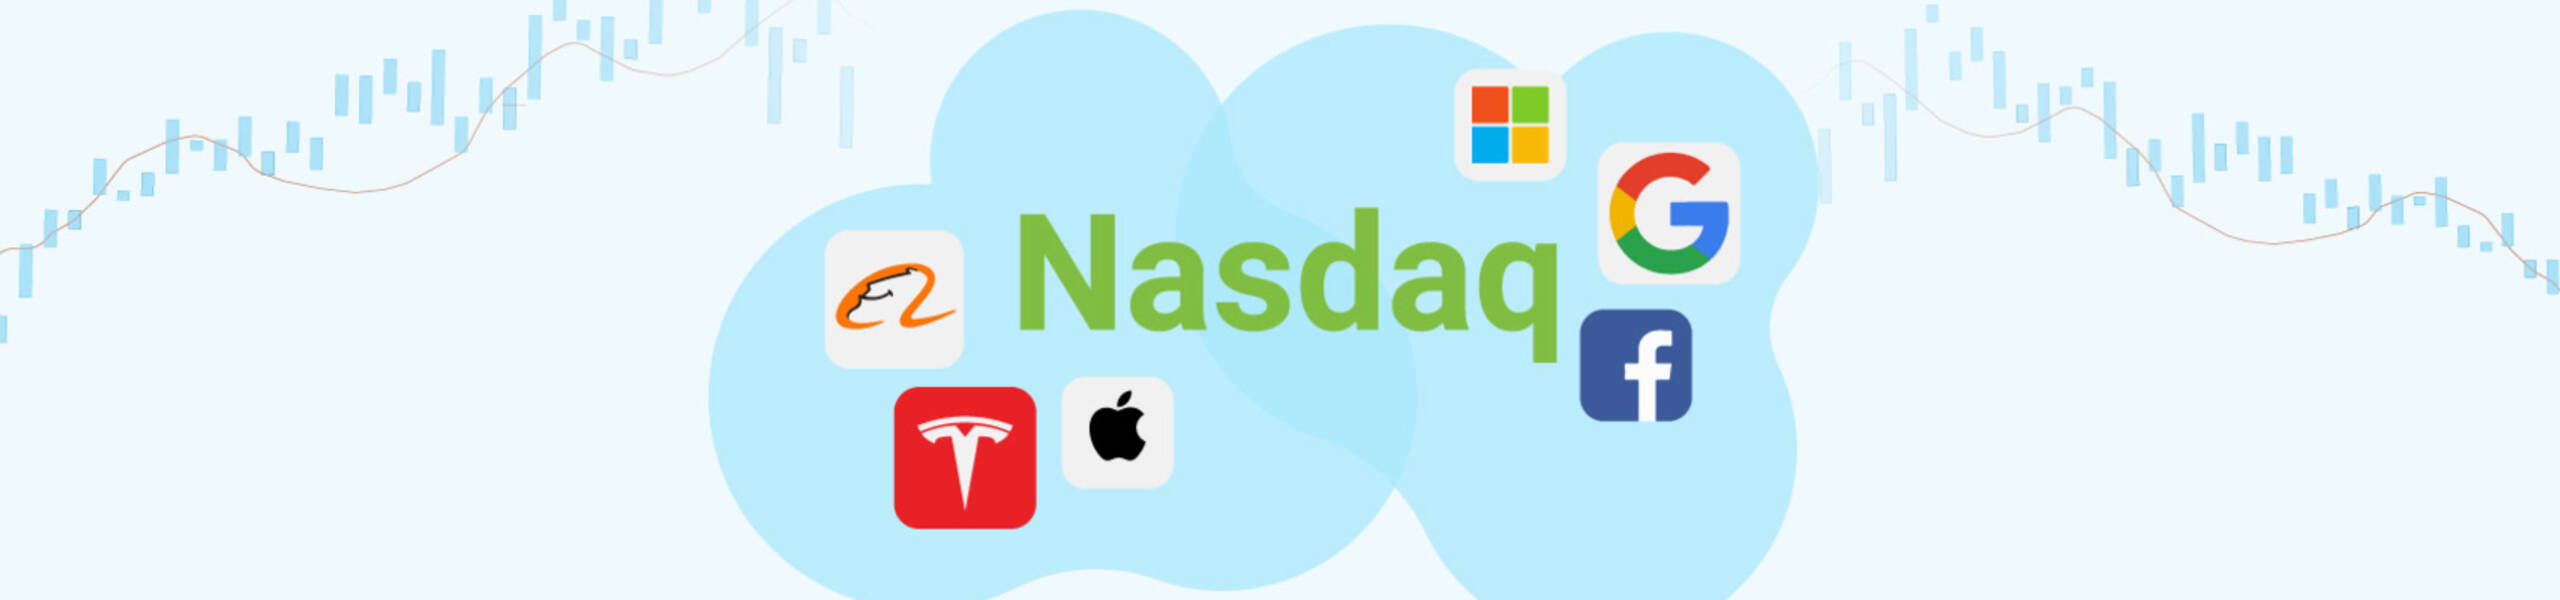 NASDAQ क्या है और इसे कैसे ट्रेड करें